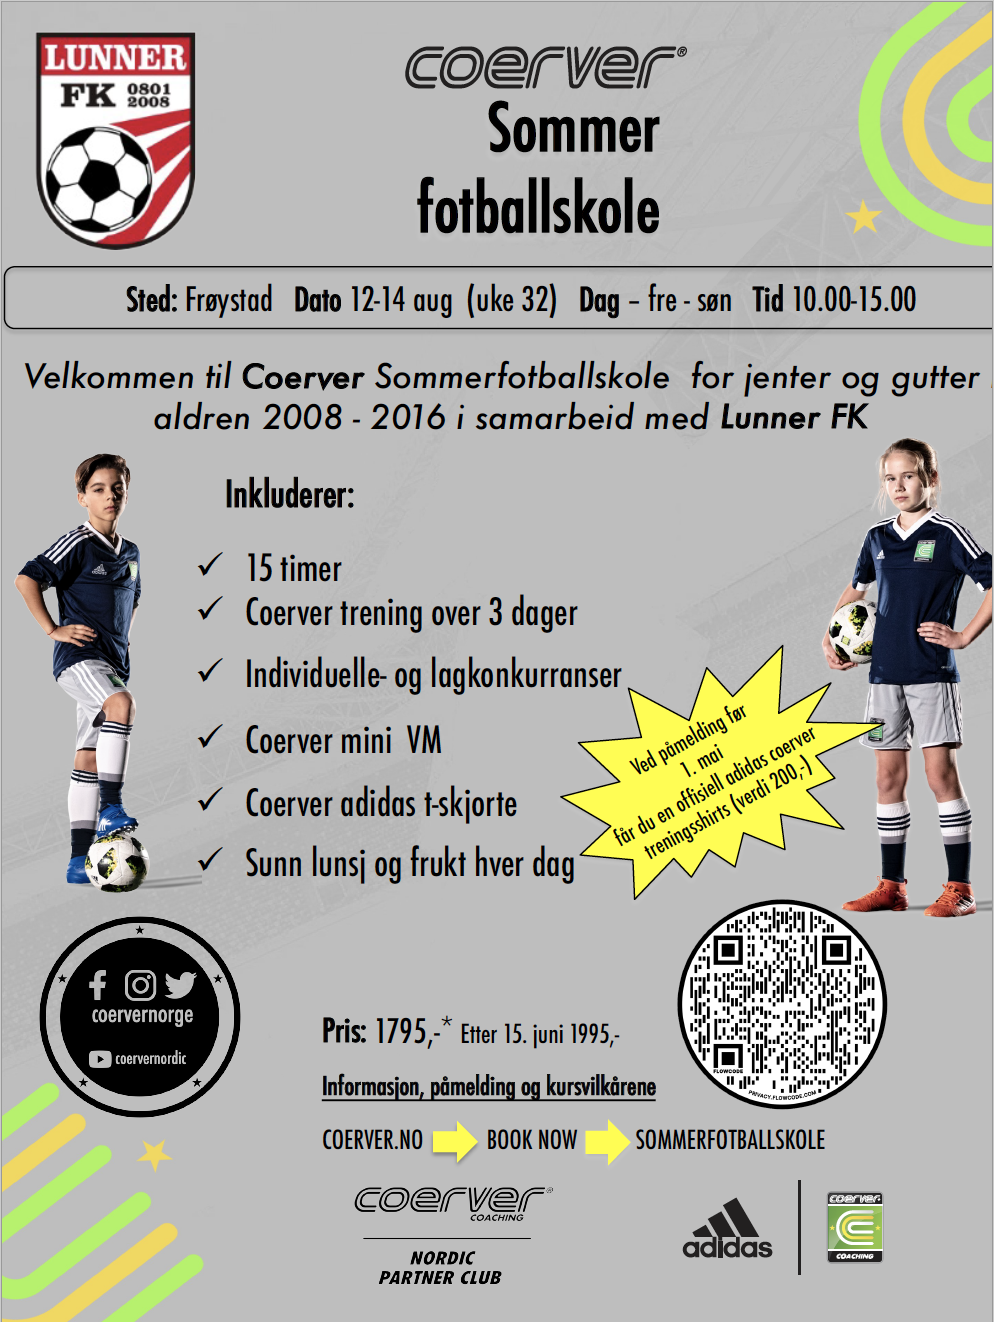 Coerver Sommerfotballskole hos Lunner FK 2022 (uke 32)